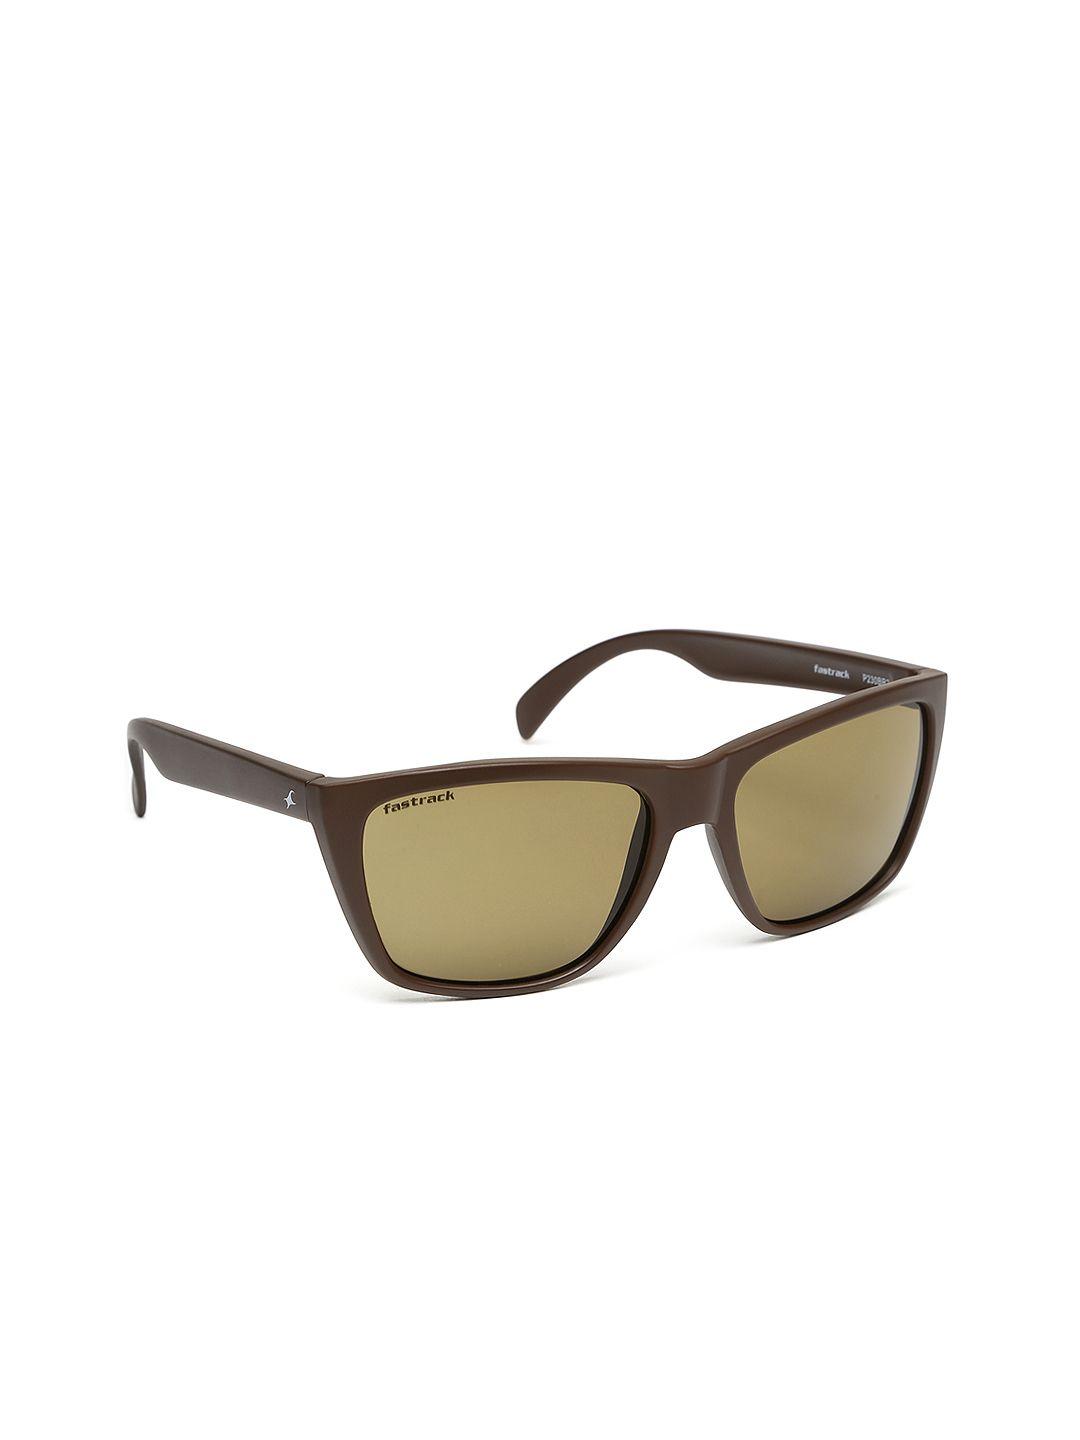 fastrack-men-sunglasses-p230br2